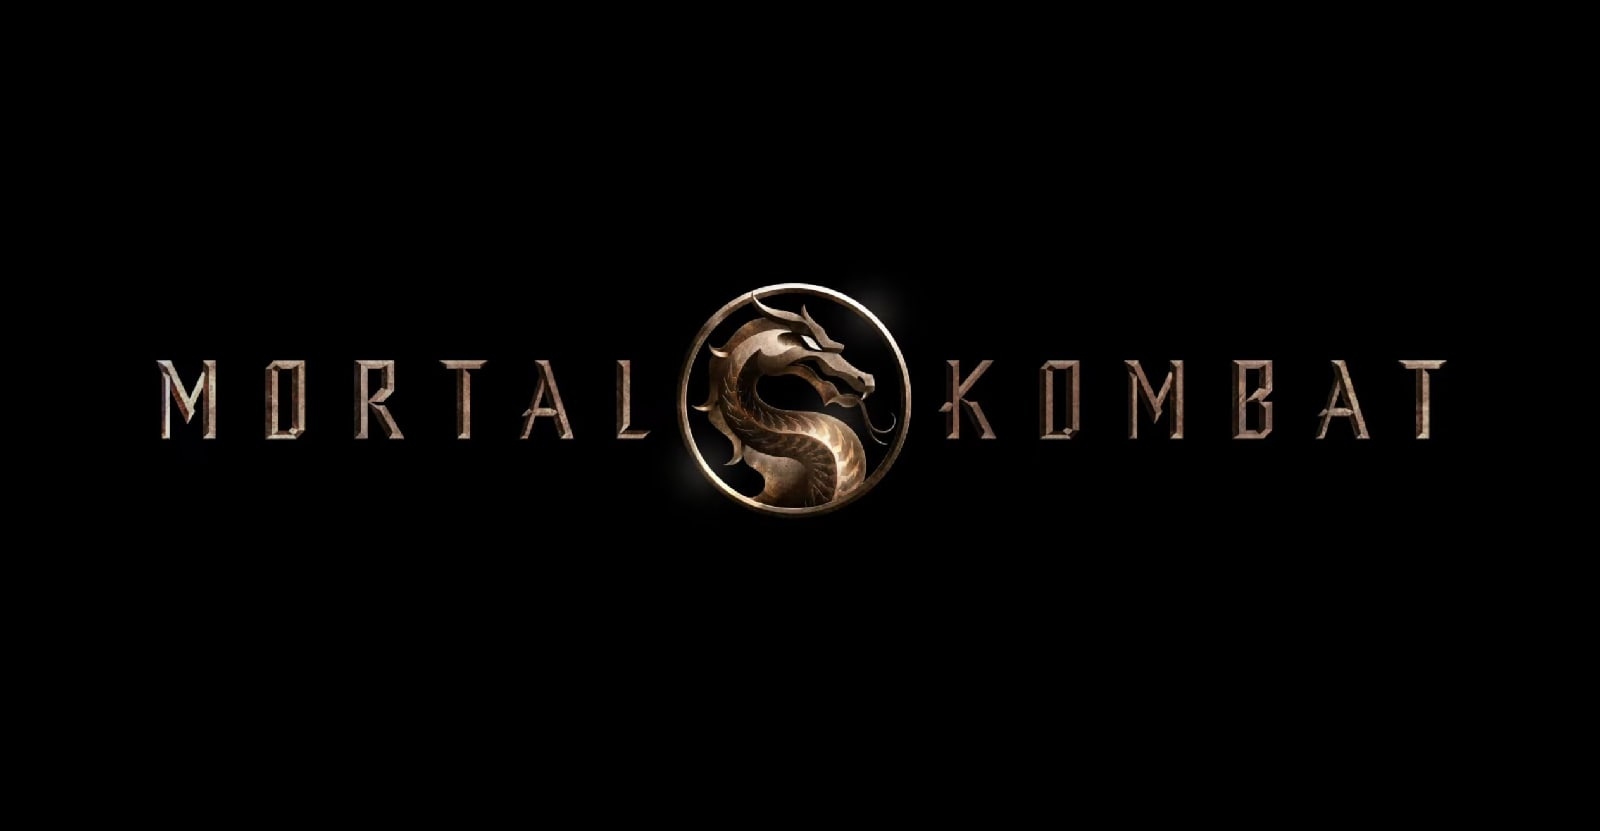 Mortal Kombat FULL movie